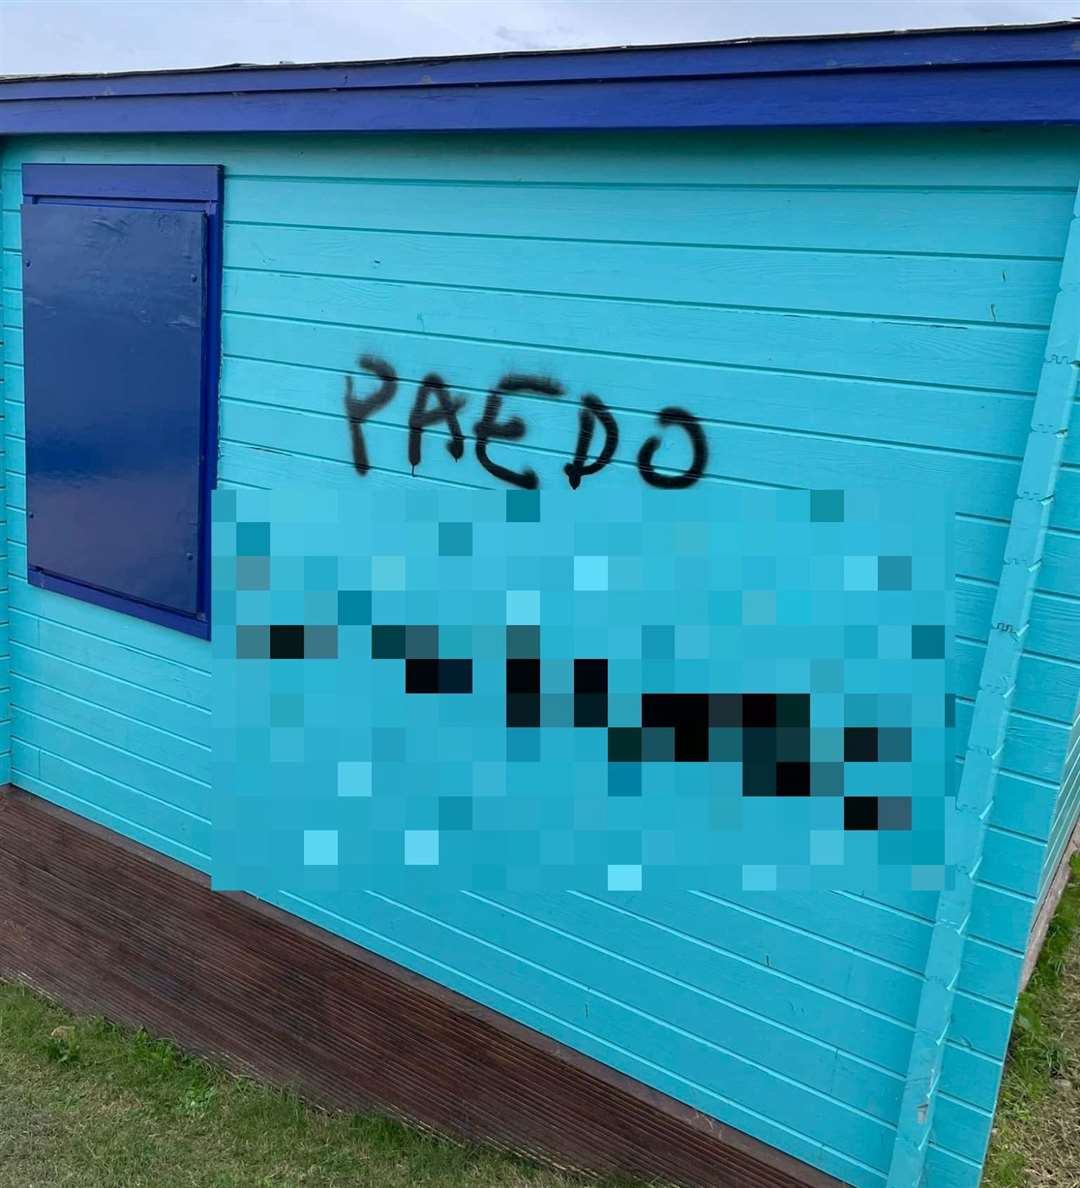 Beach huts were daubed in graffiti in Tankerton. Picture: Warren Jarvis